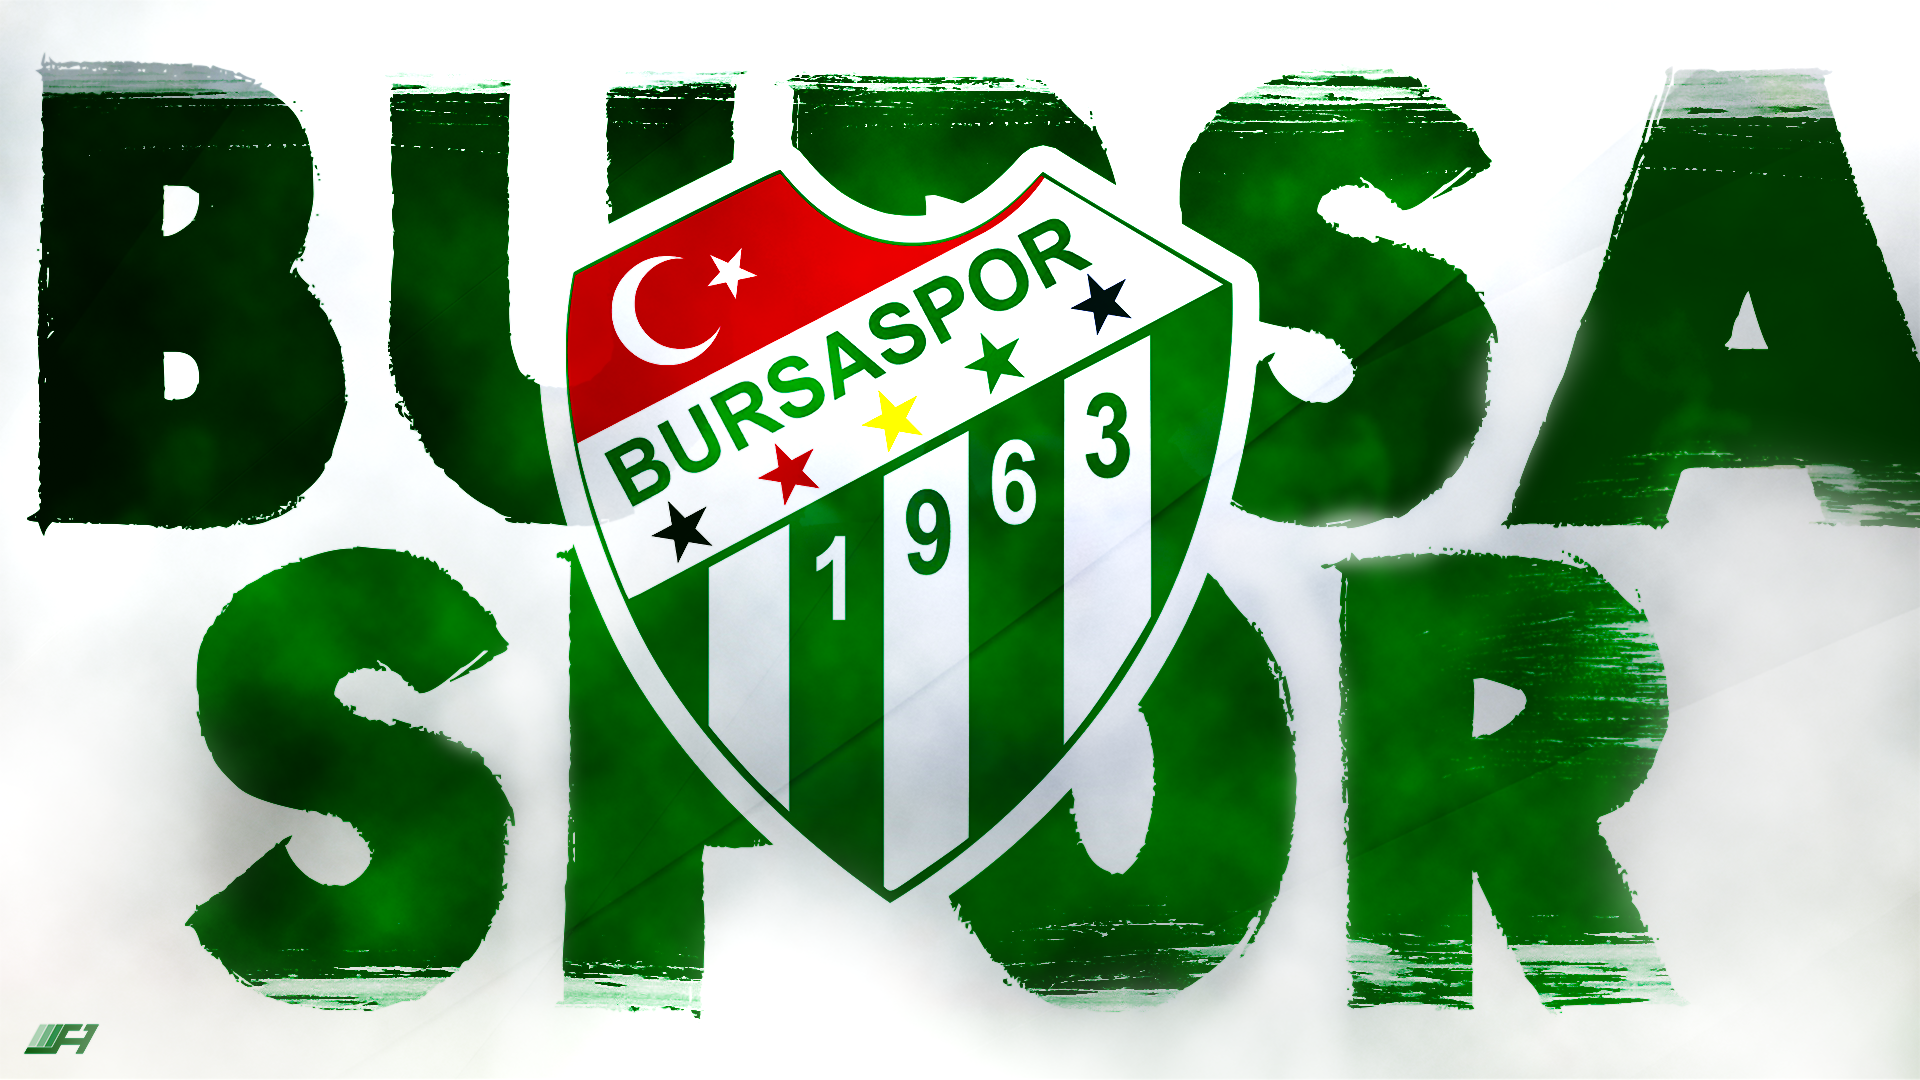 Bursaspor Wallpapers